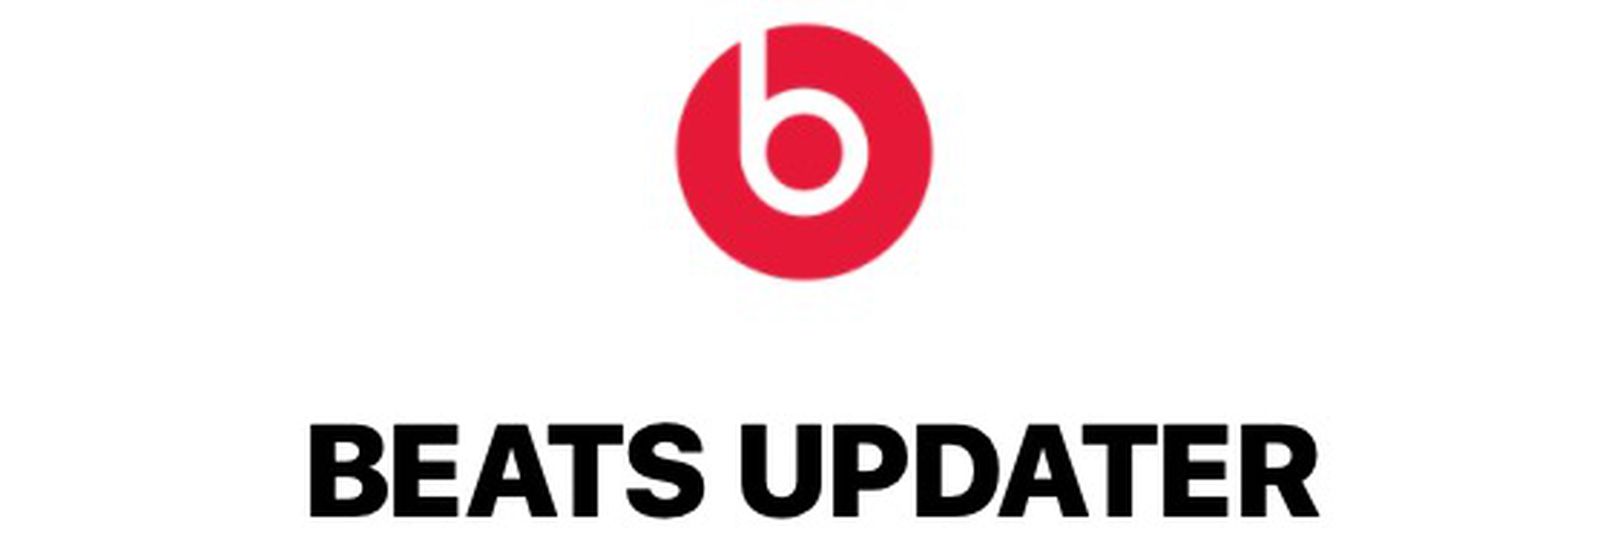 Beats updater app download